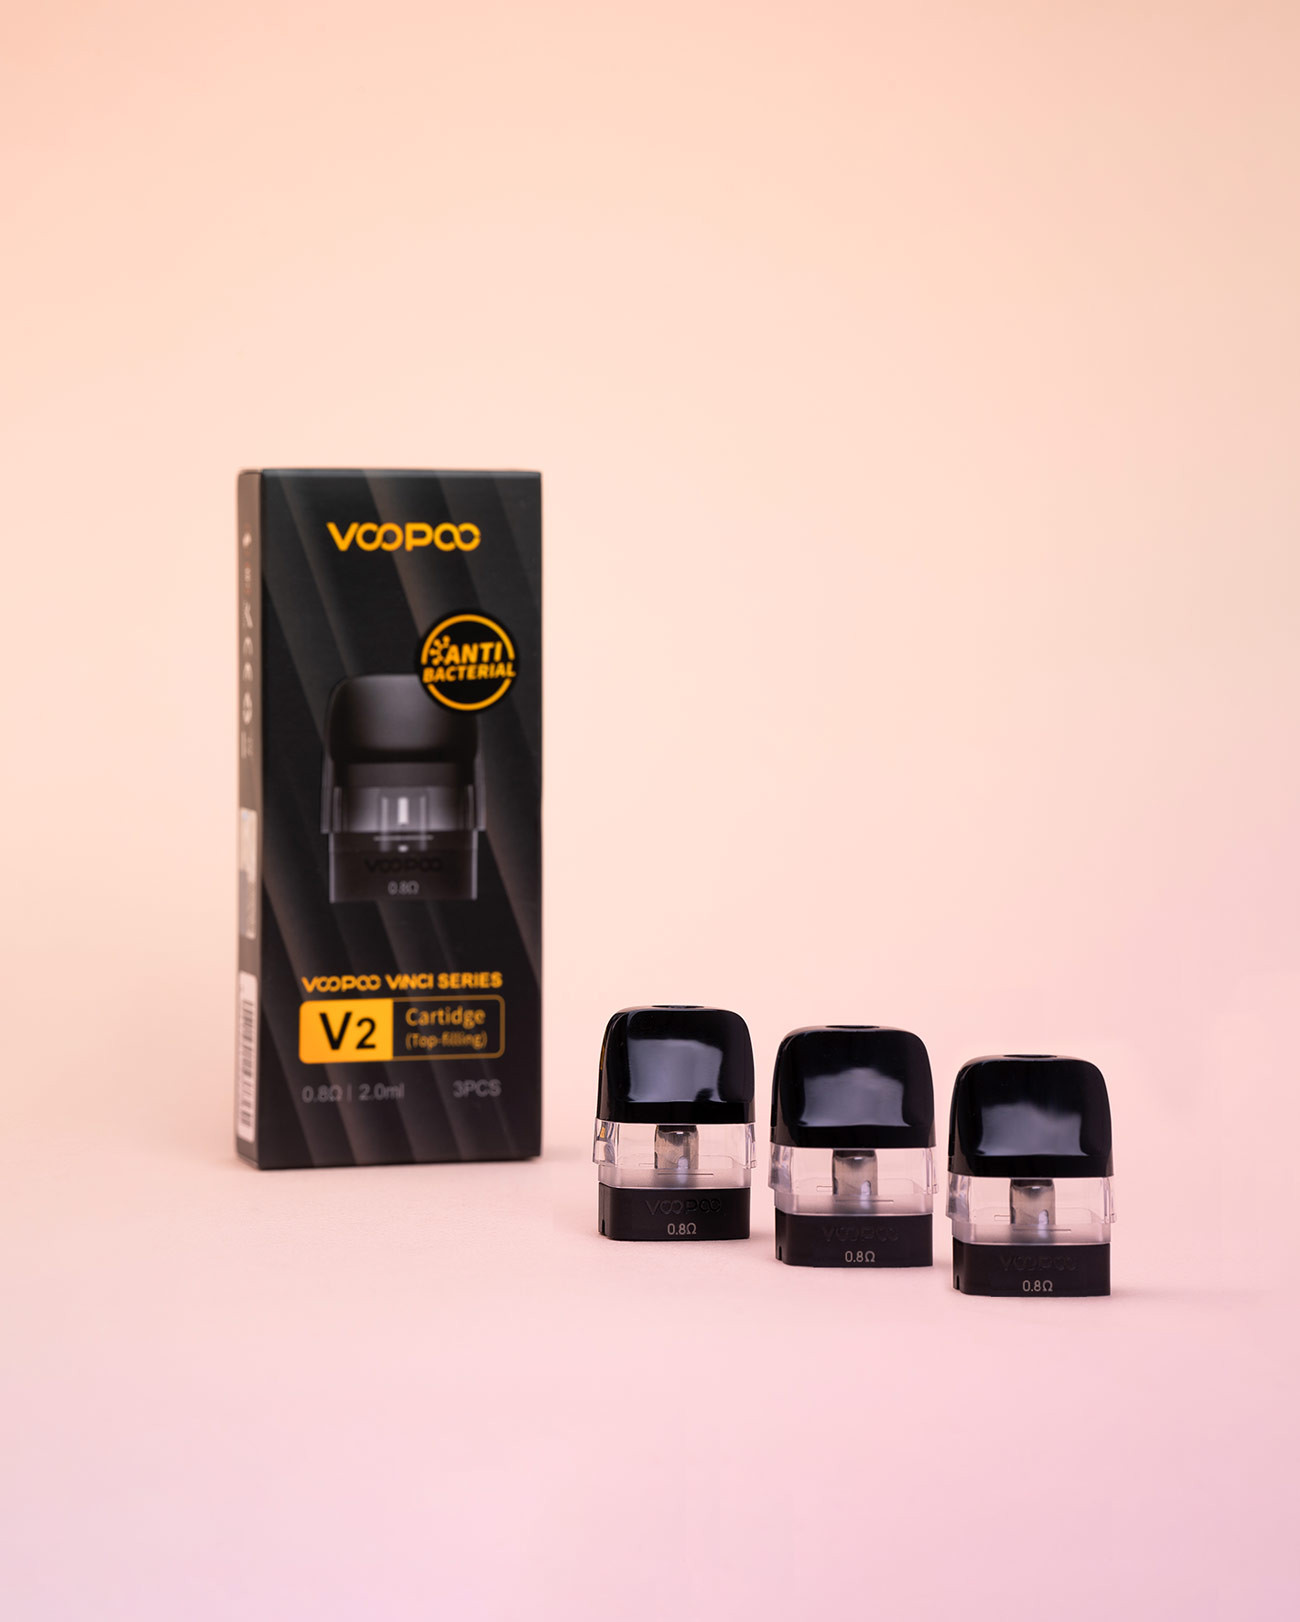 Pack de 3 cartouches 0,8 ohm tirage semi aérien compatibles avec les pods Vinci Q, Vinci SE et Drag Nano 2 de chez Voopoo.